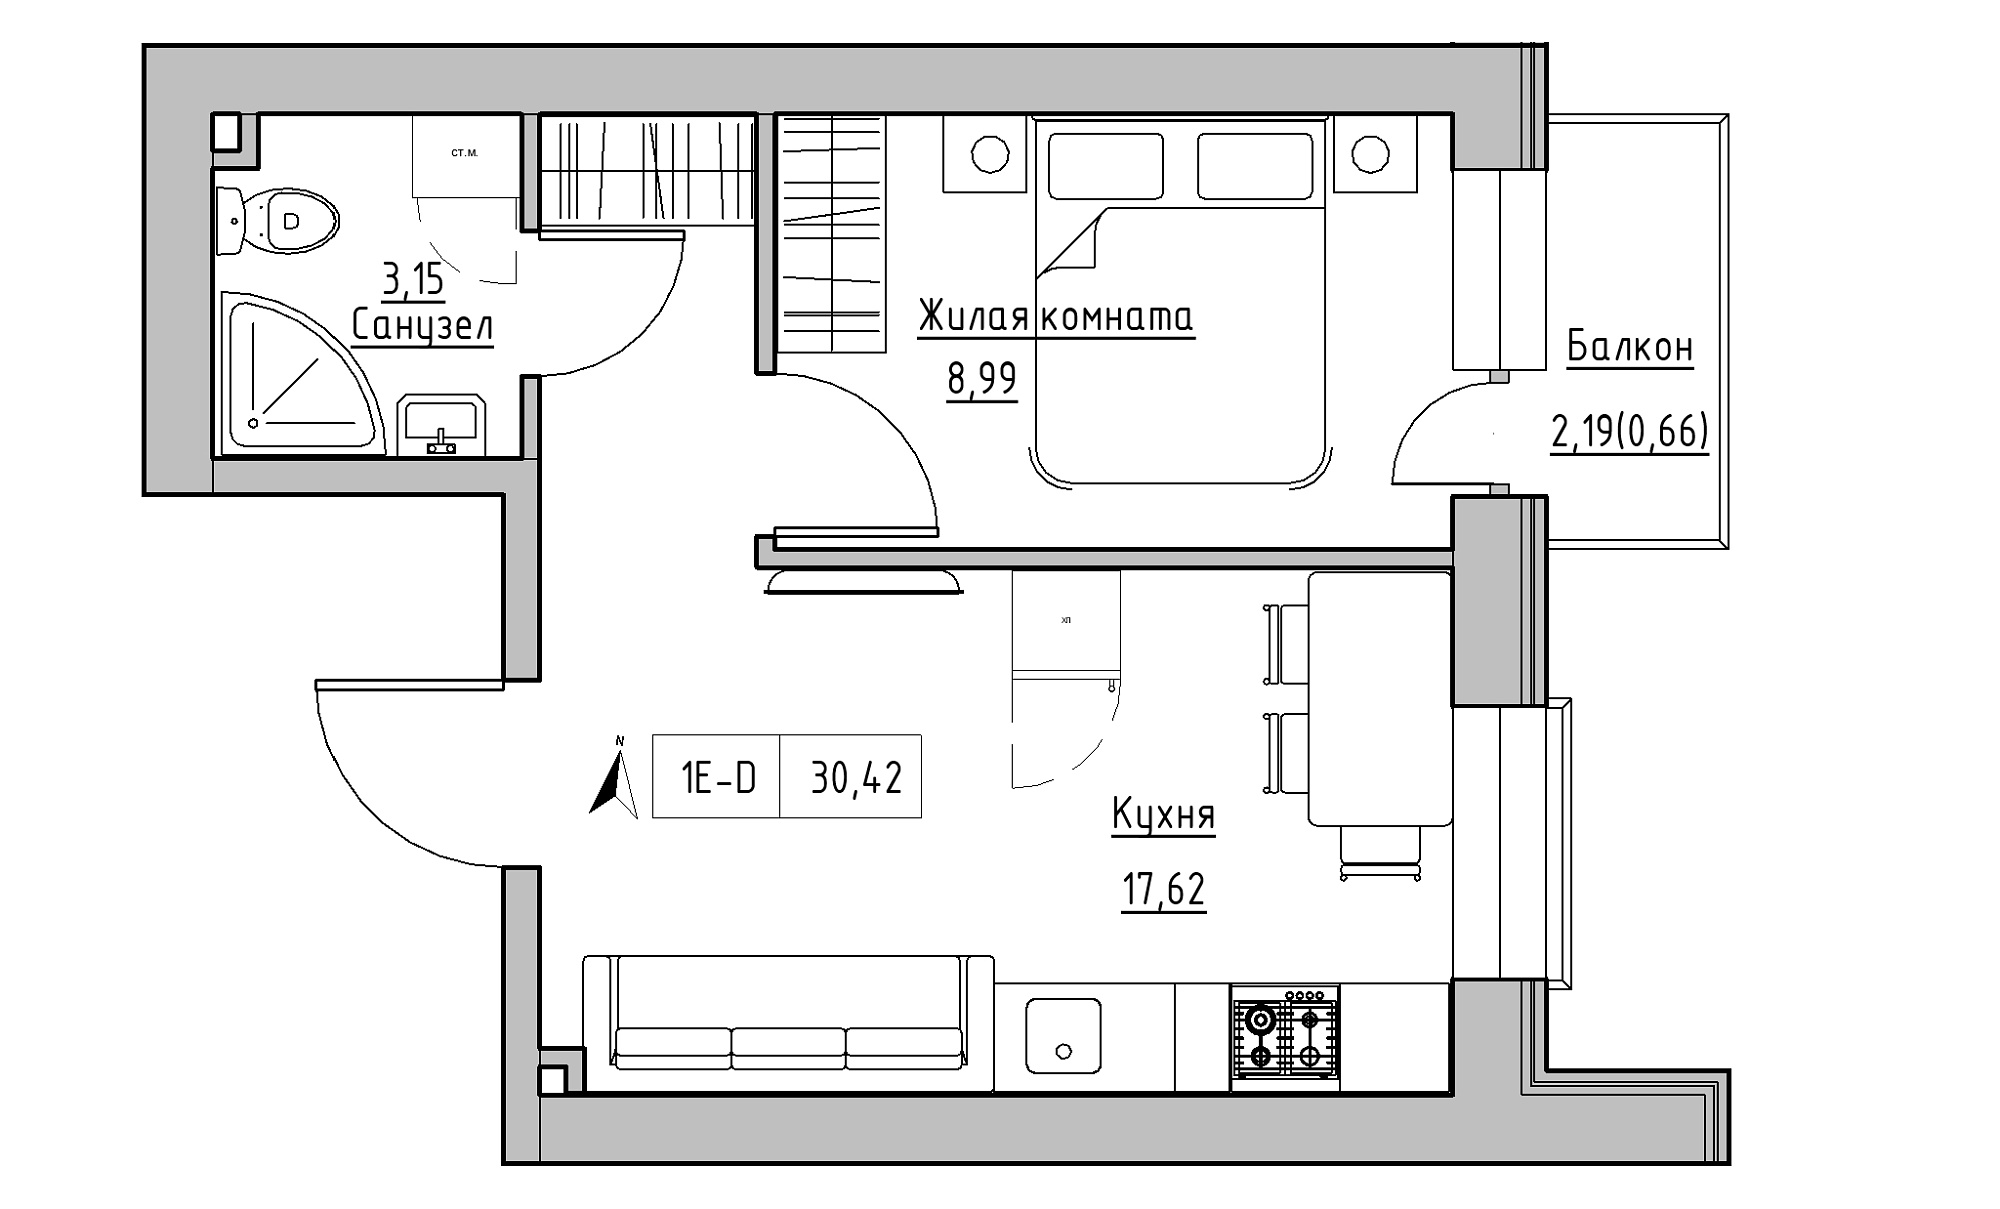 Планування 1-к квартира площею 30.42м2, KS-016-03/0013.